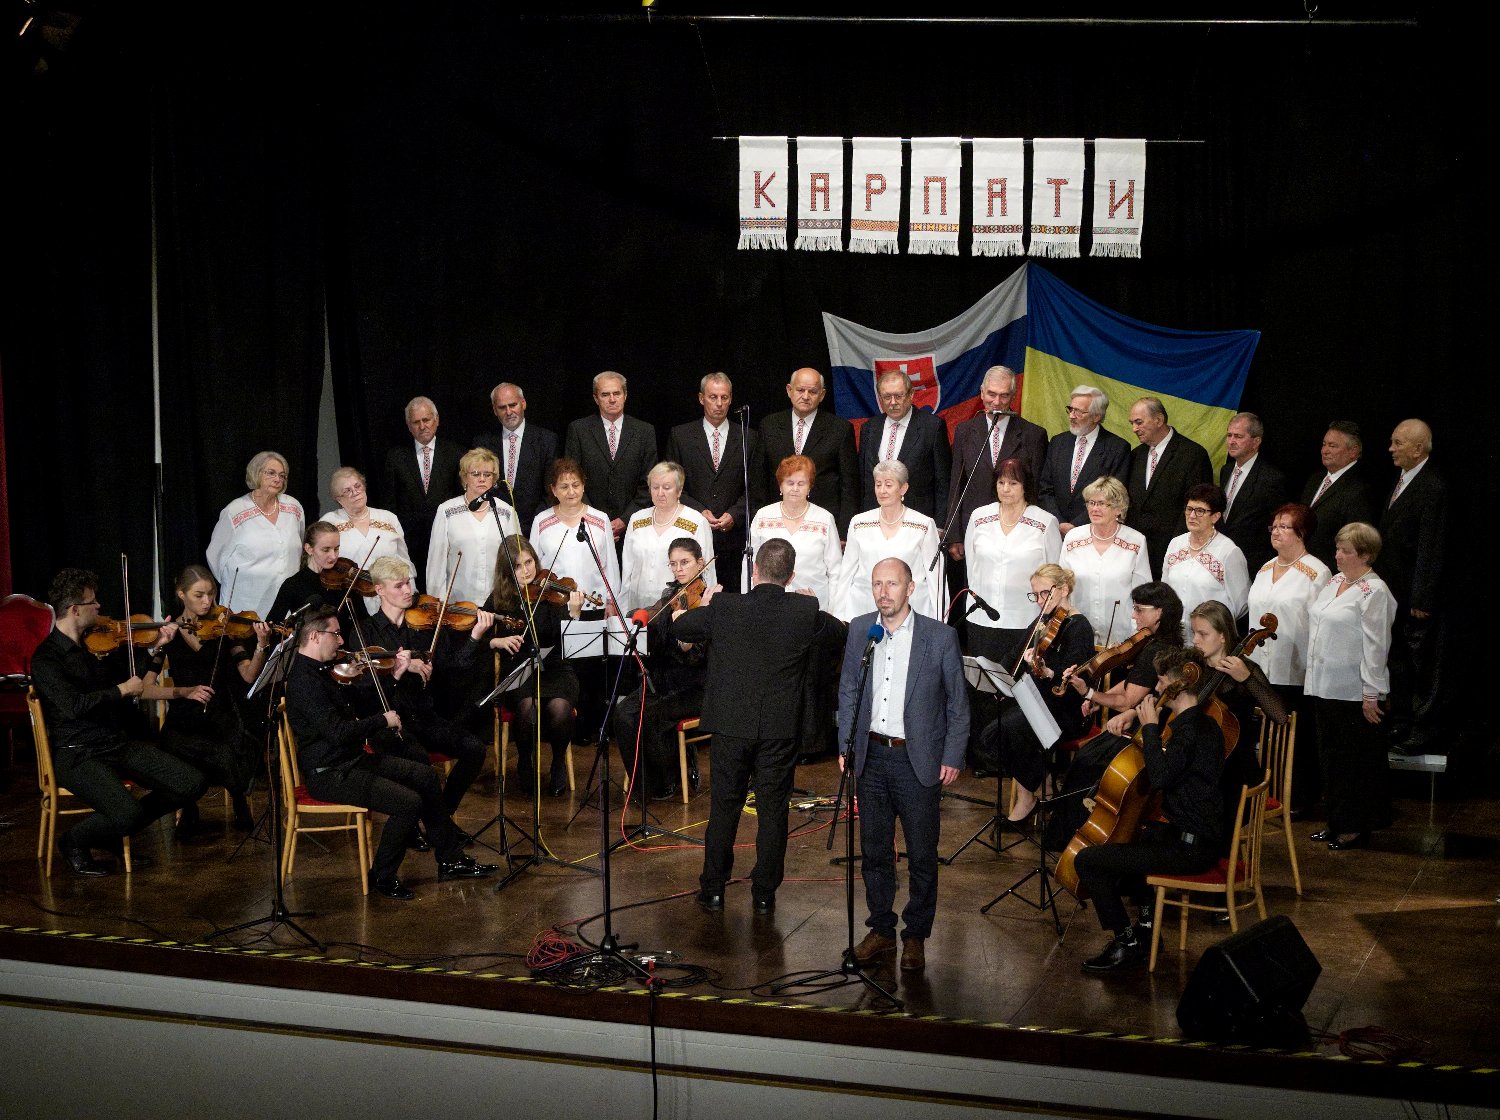 Після річної перерви у Кошицях у рамках Днів України відбувся концерт хору "Карпати" (ФОТО)